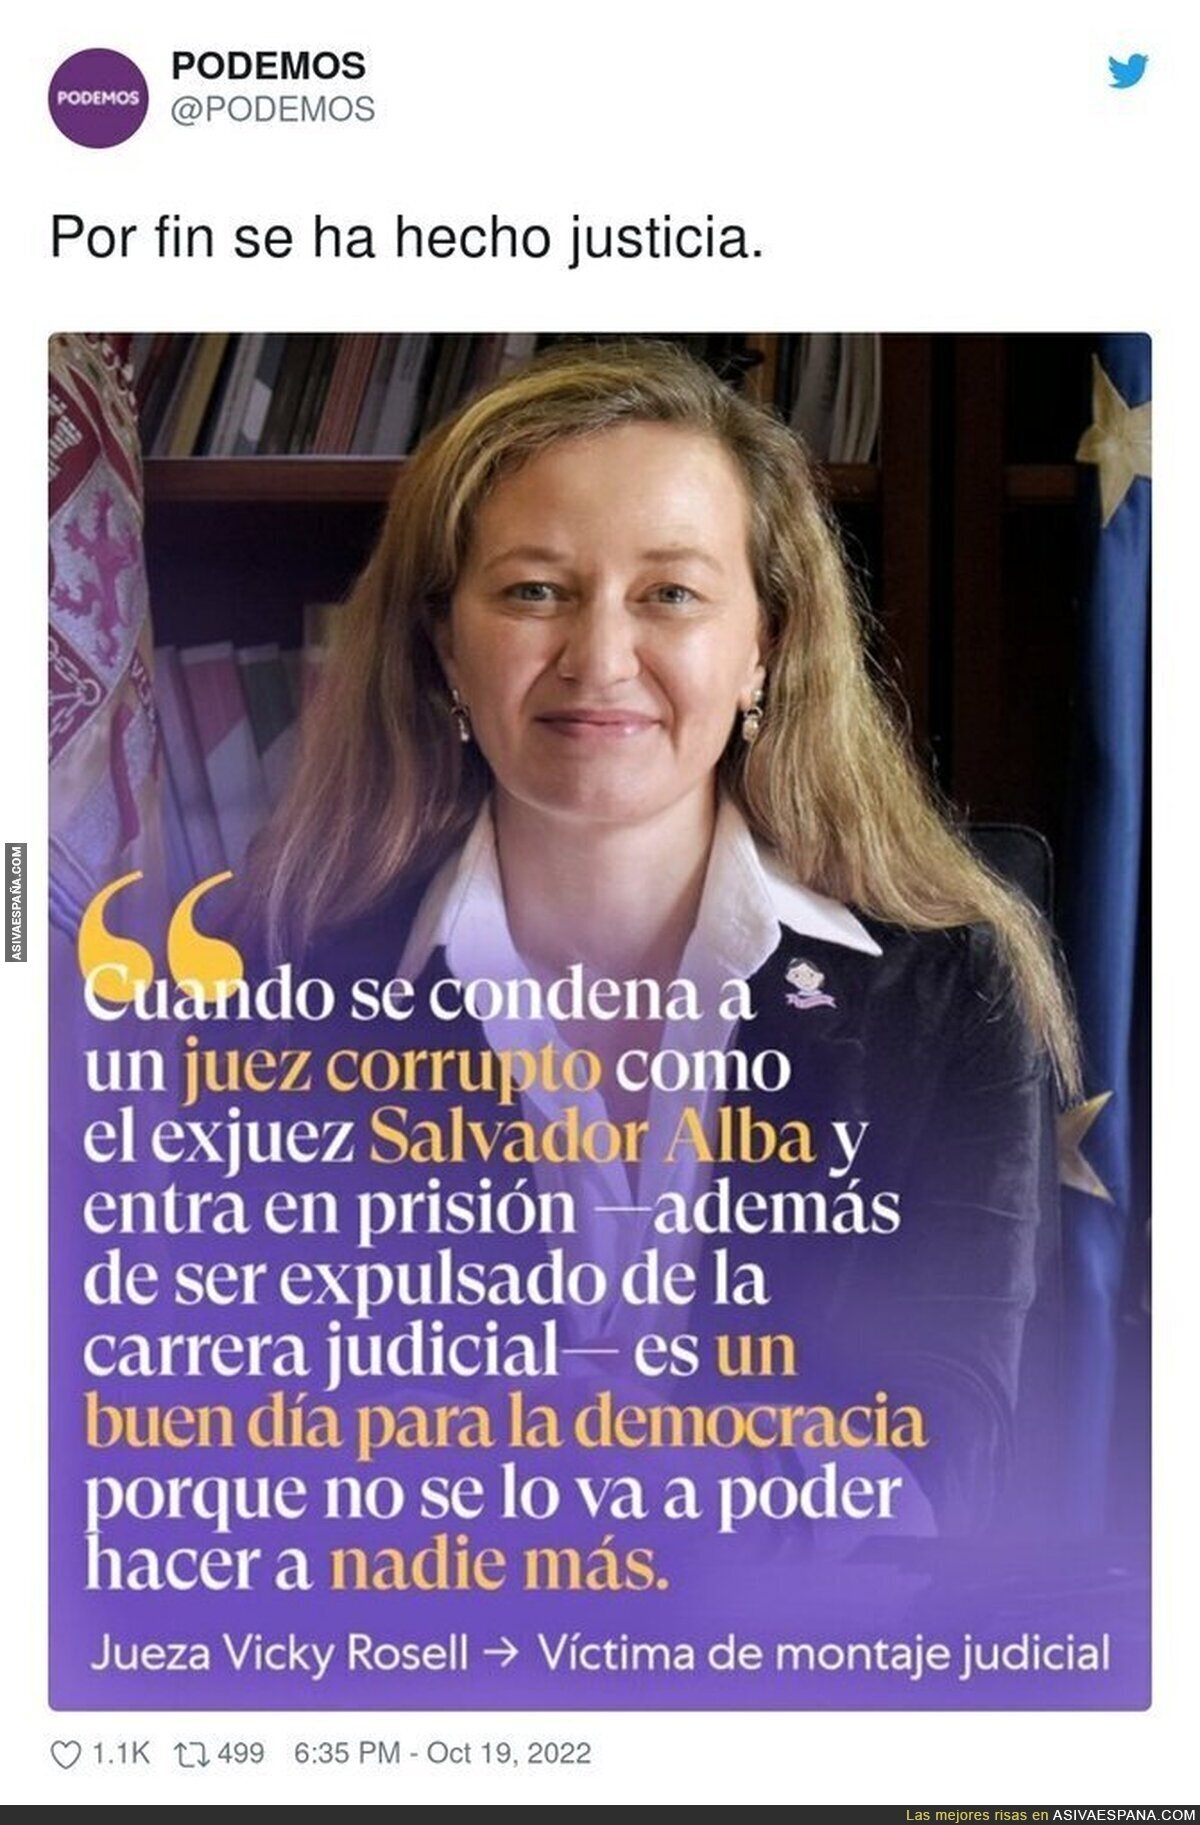 La justicia existe en España